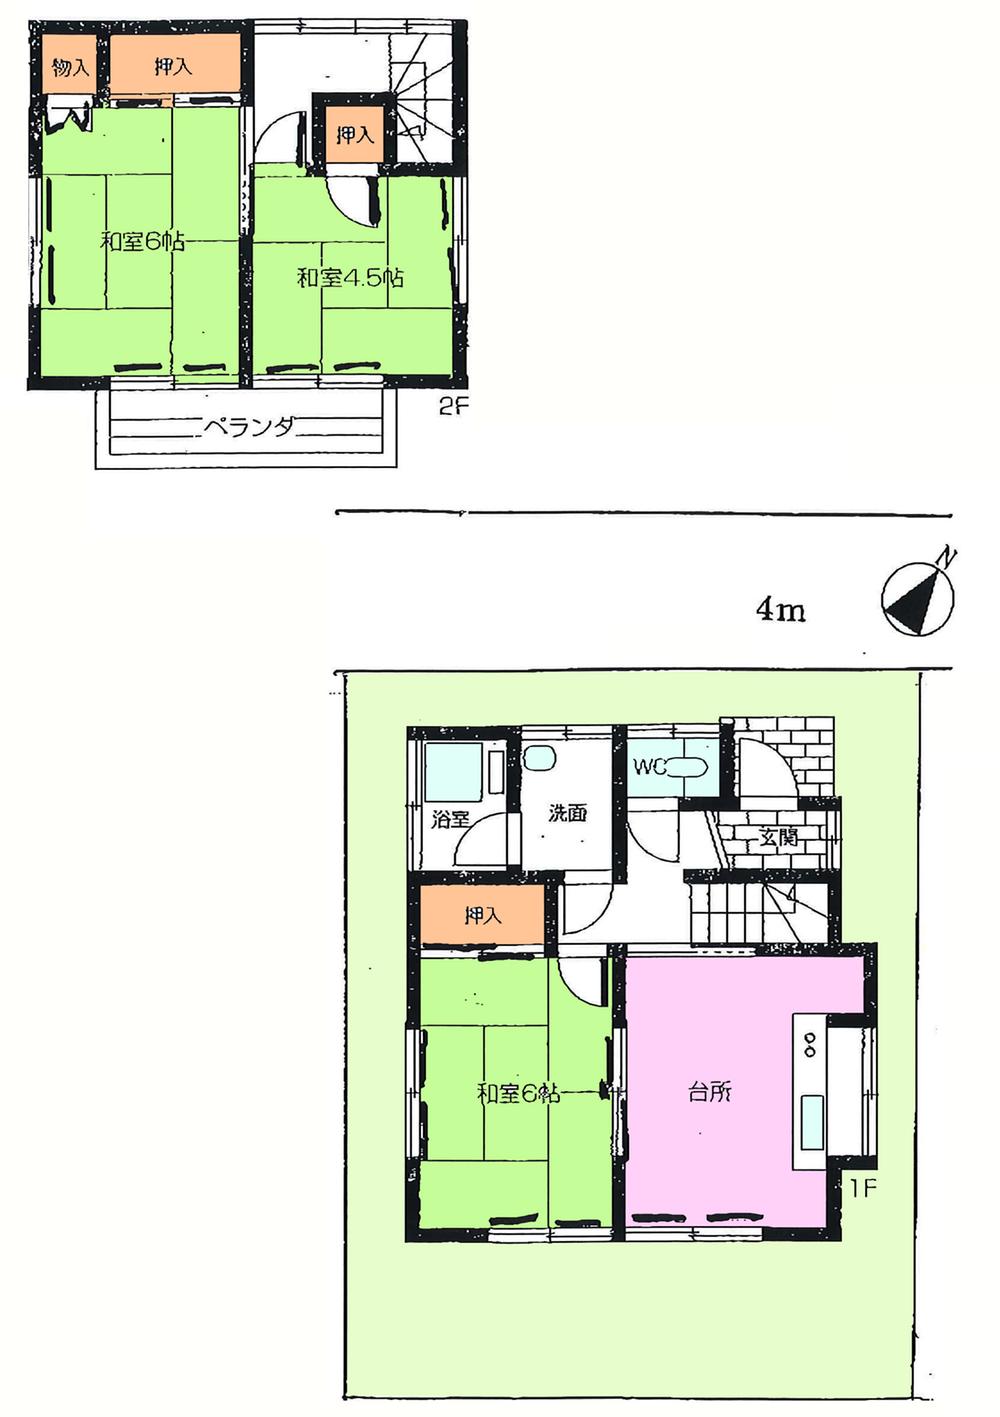 Floor plan. 6 million yen, 3DK, Land area 60.81 sq m , Building area 58.21 sq m